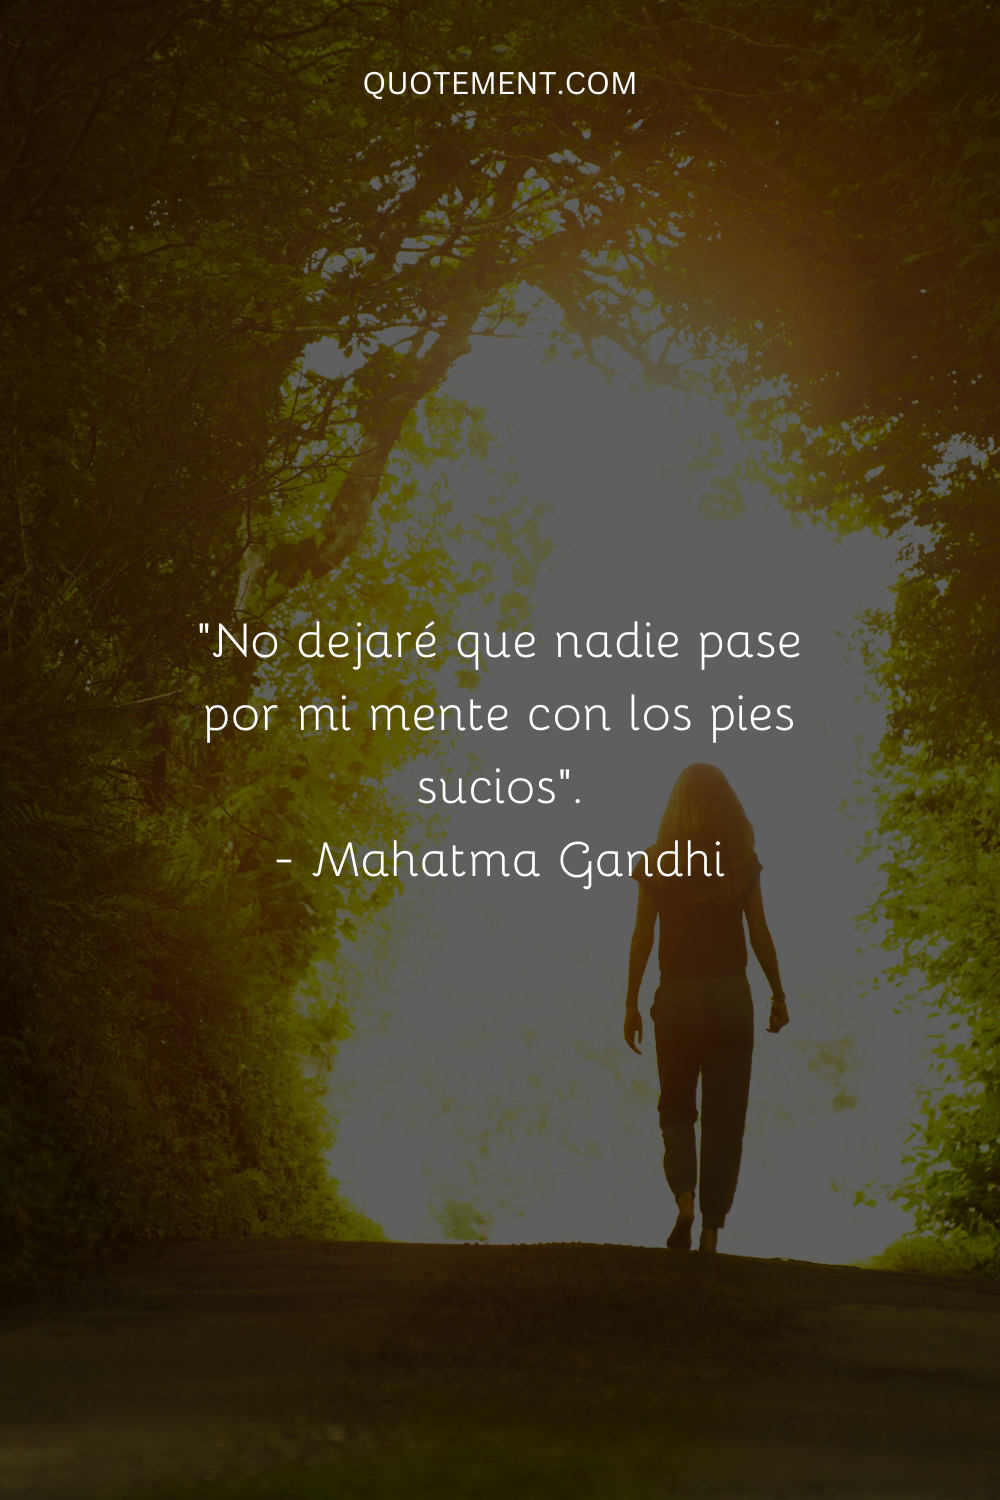 "No dejaré que nadie pasee por mi mente con sus pies sucios". - Mahatma Gandhi